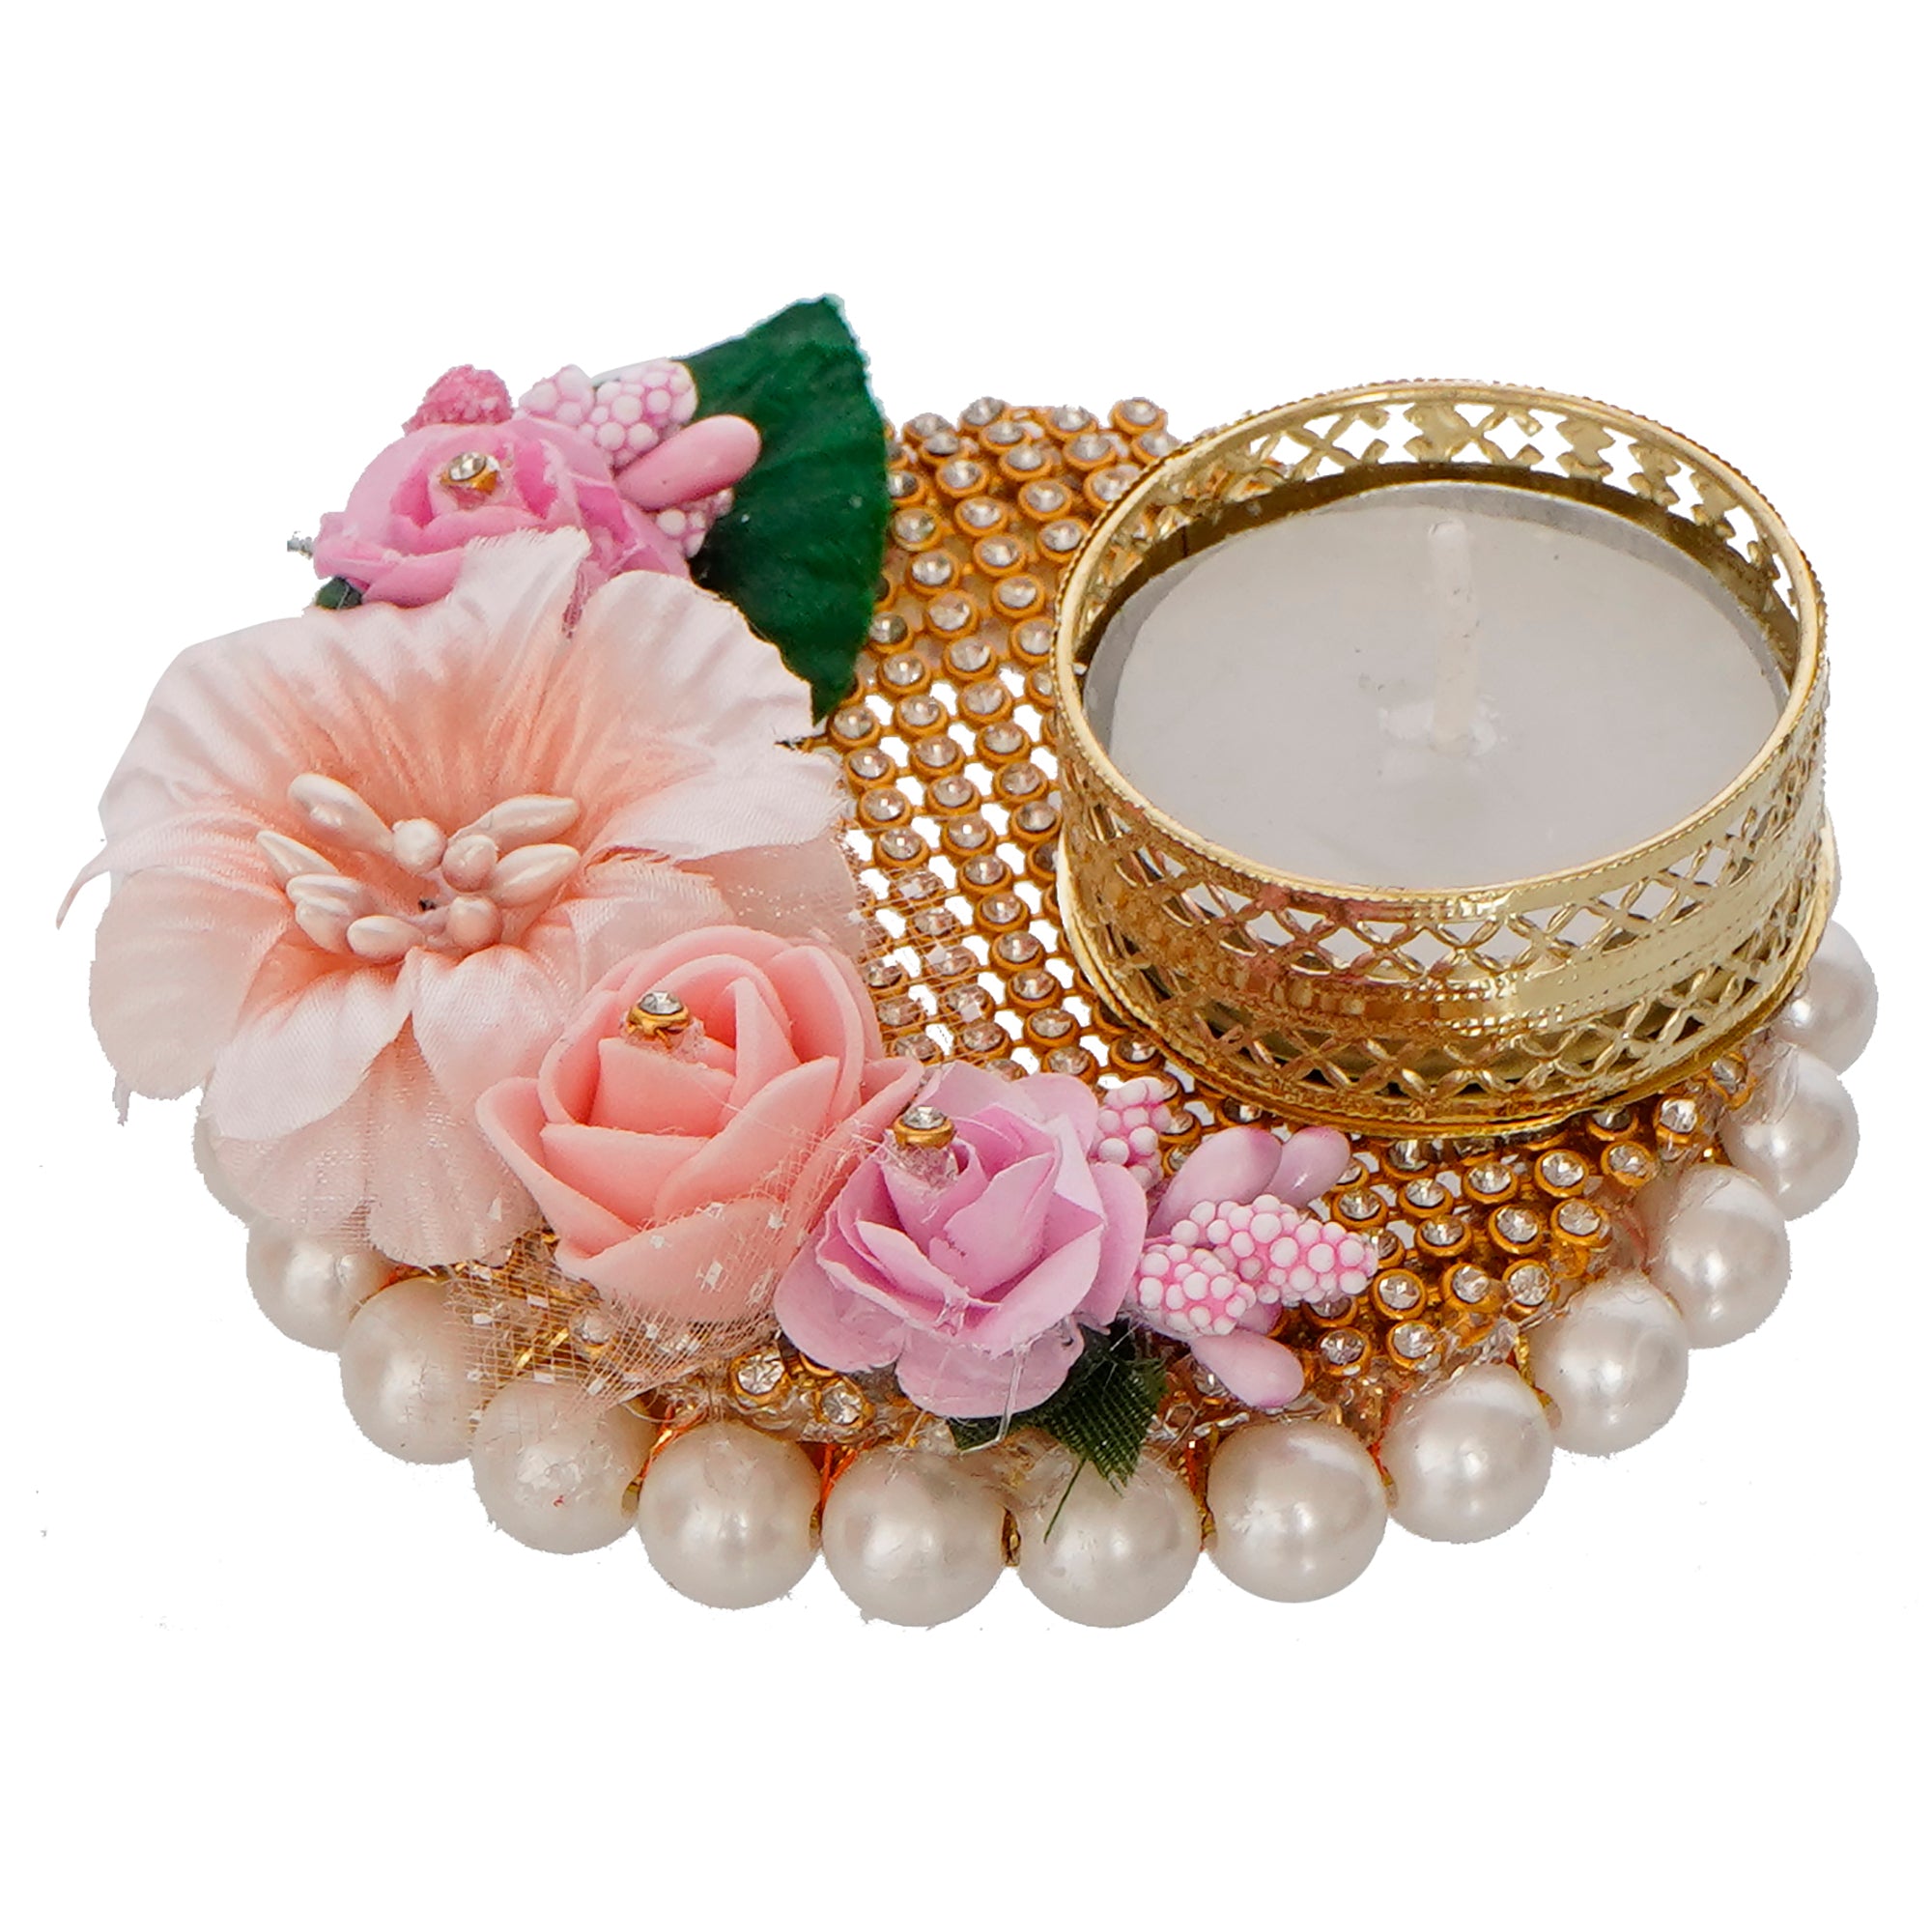 Decorative Handcrafted Pink Floral Tea Light Holder 2